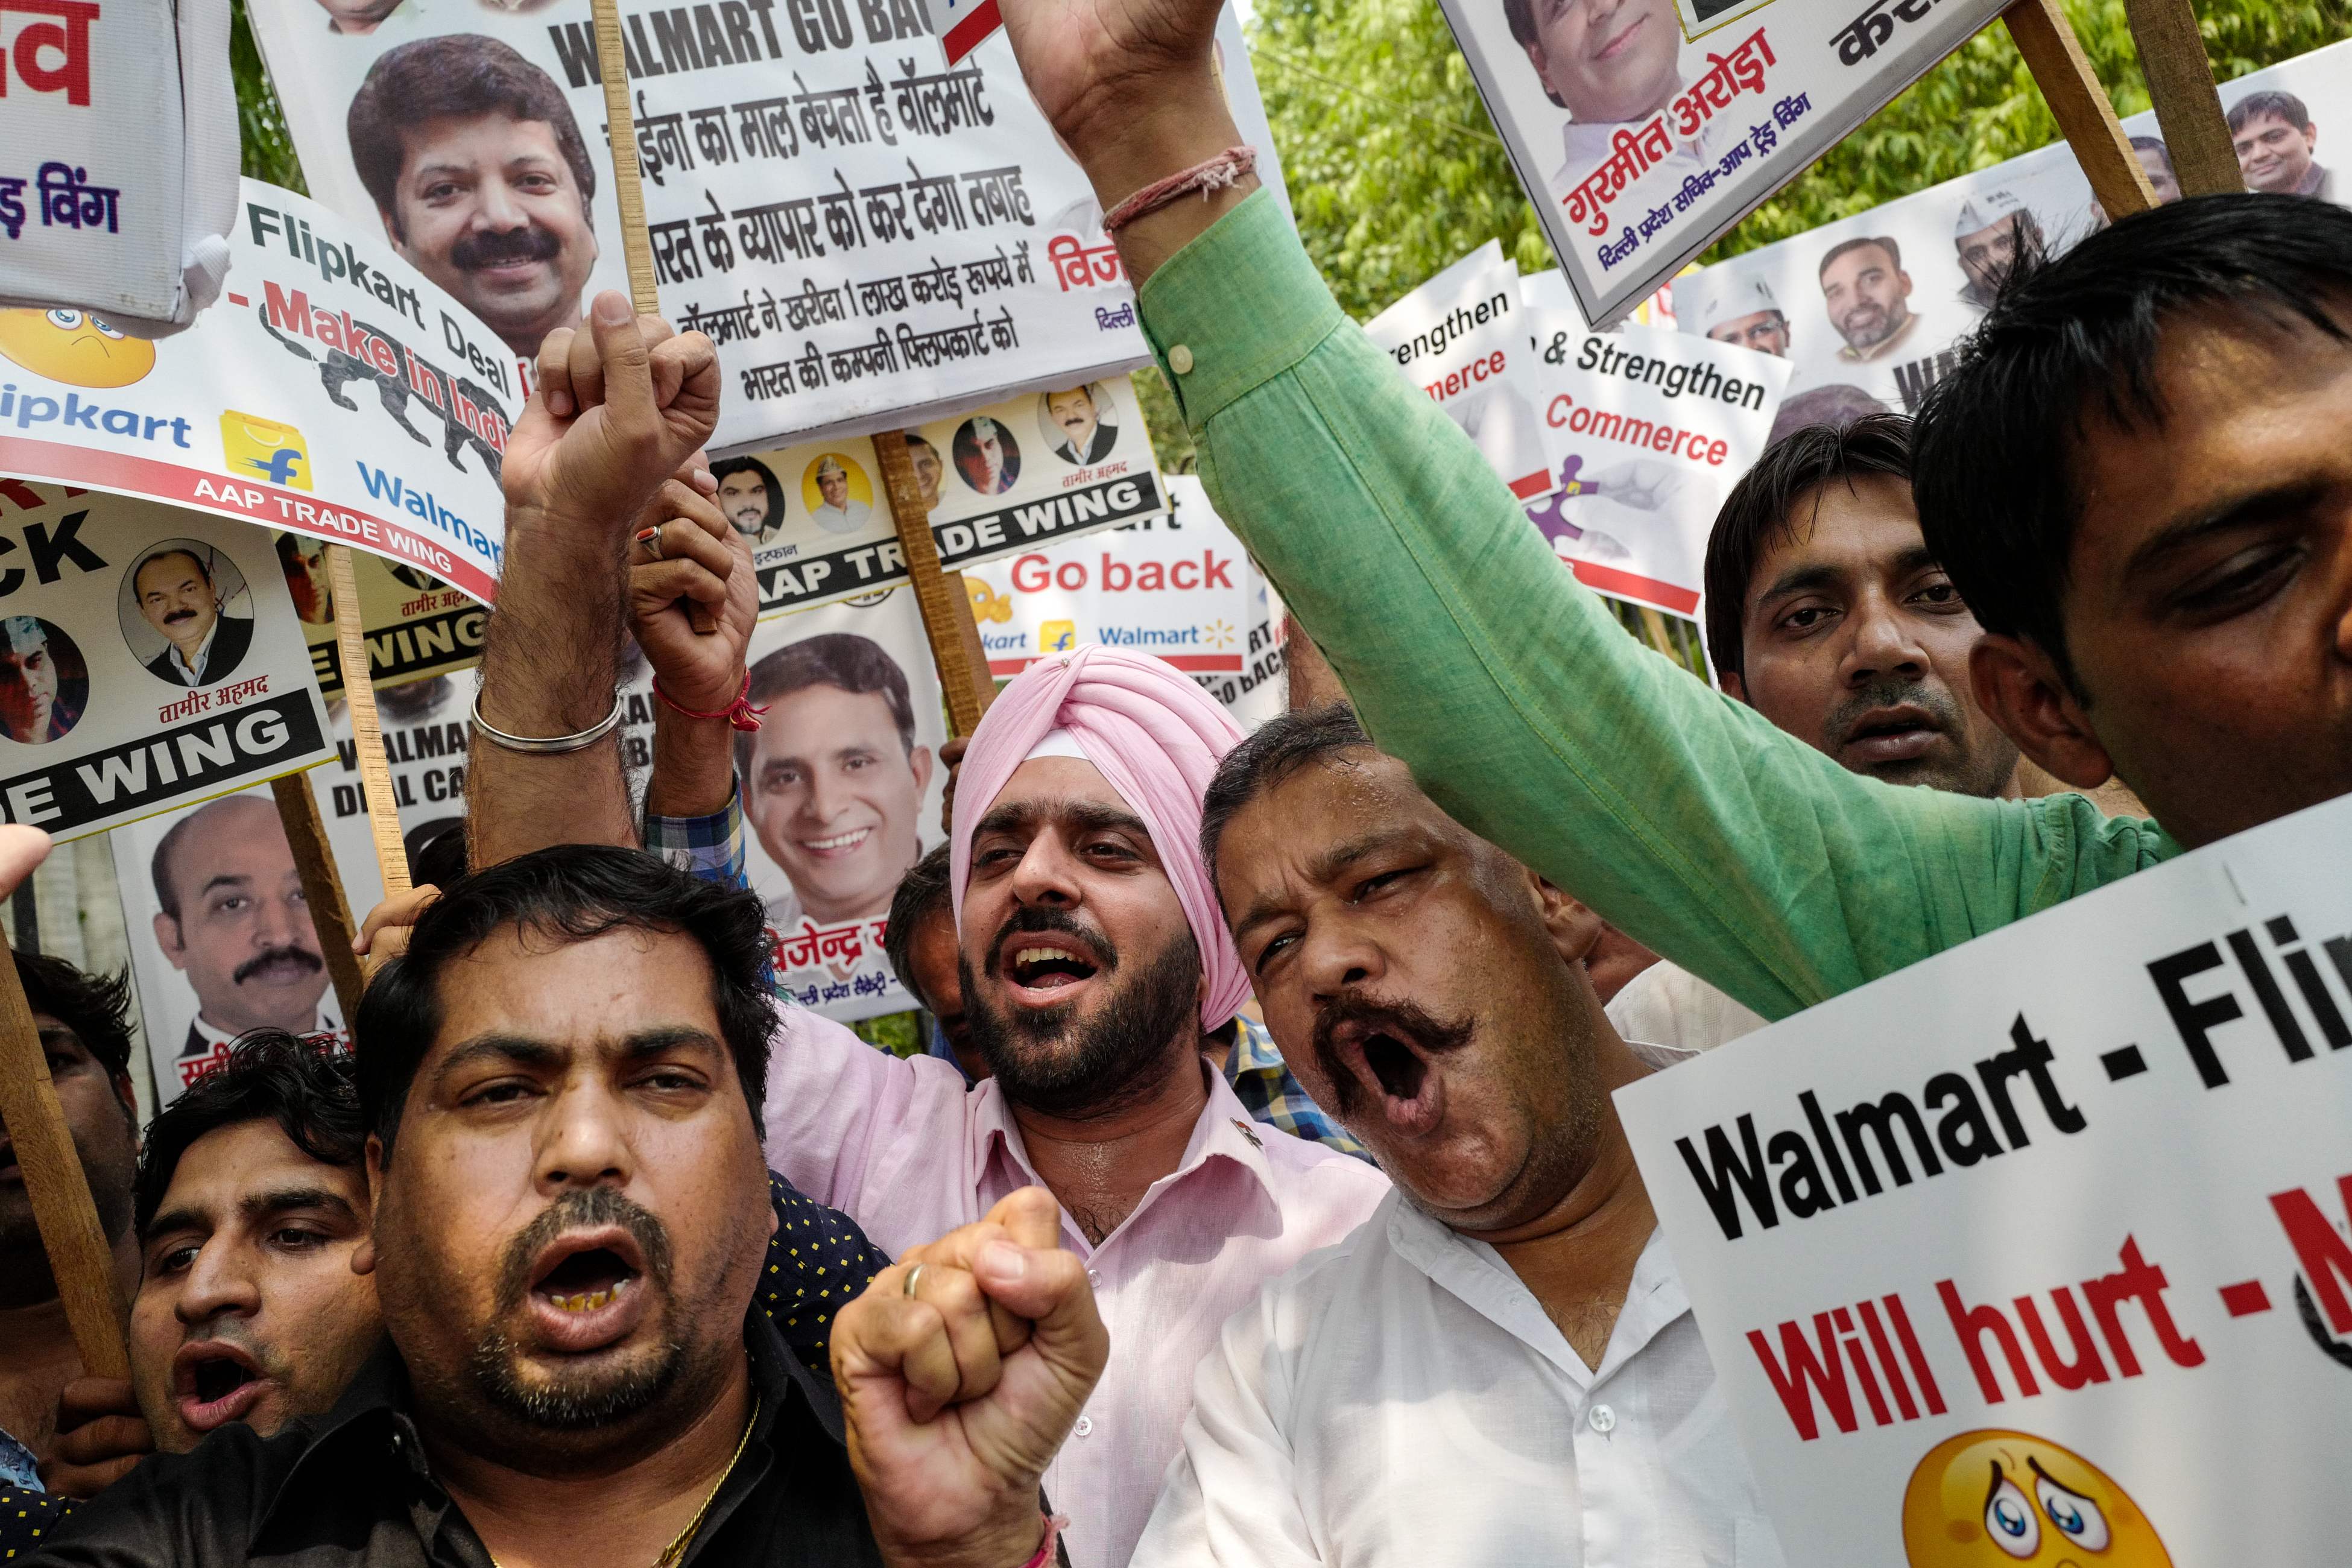 مظاهرات هندية ضد بيع أسهم شركة لصالح أخرى أمريكية